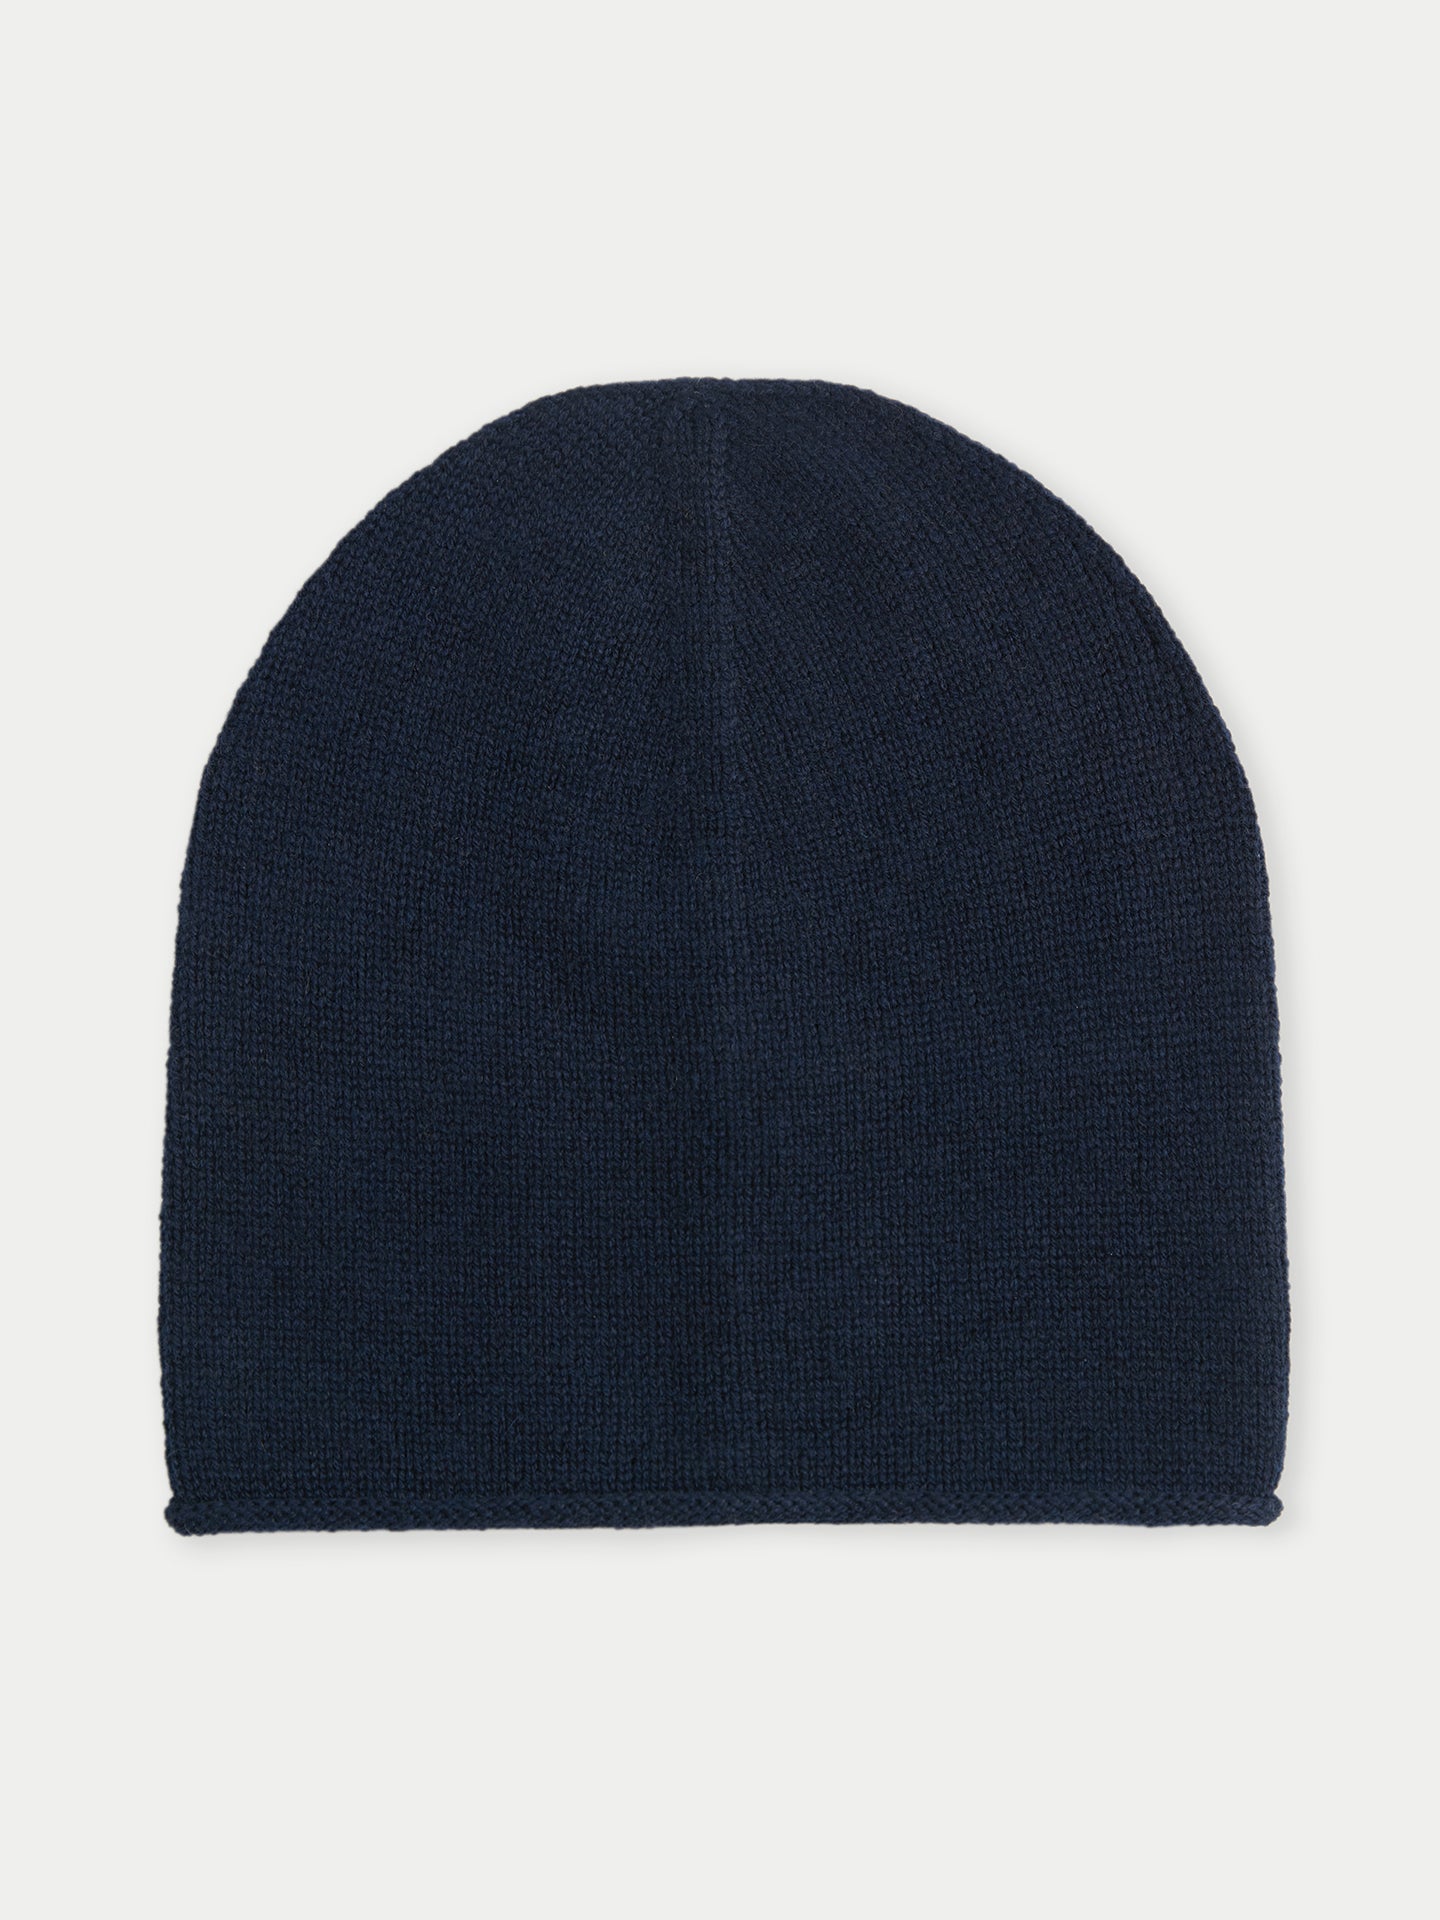 Women's Cashmere $99 Hat & Sweater Set Navy - Gobi Cashmere